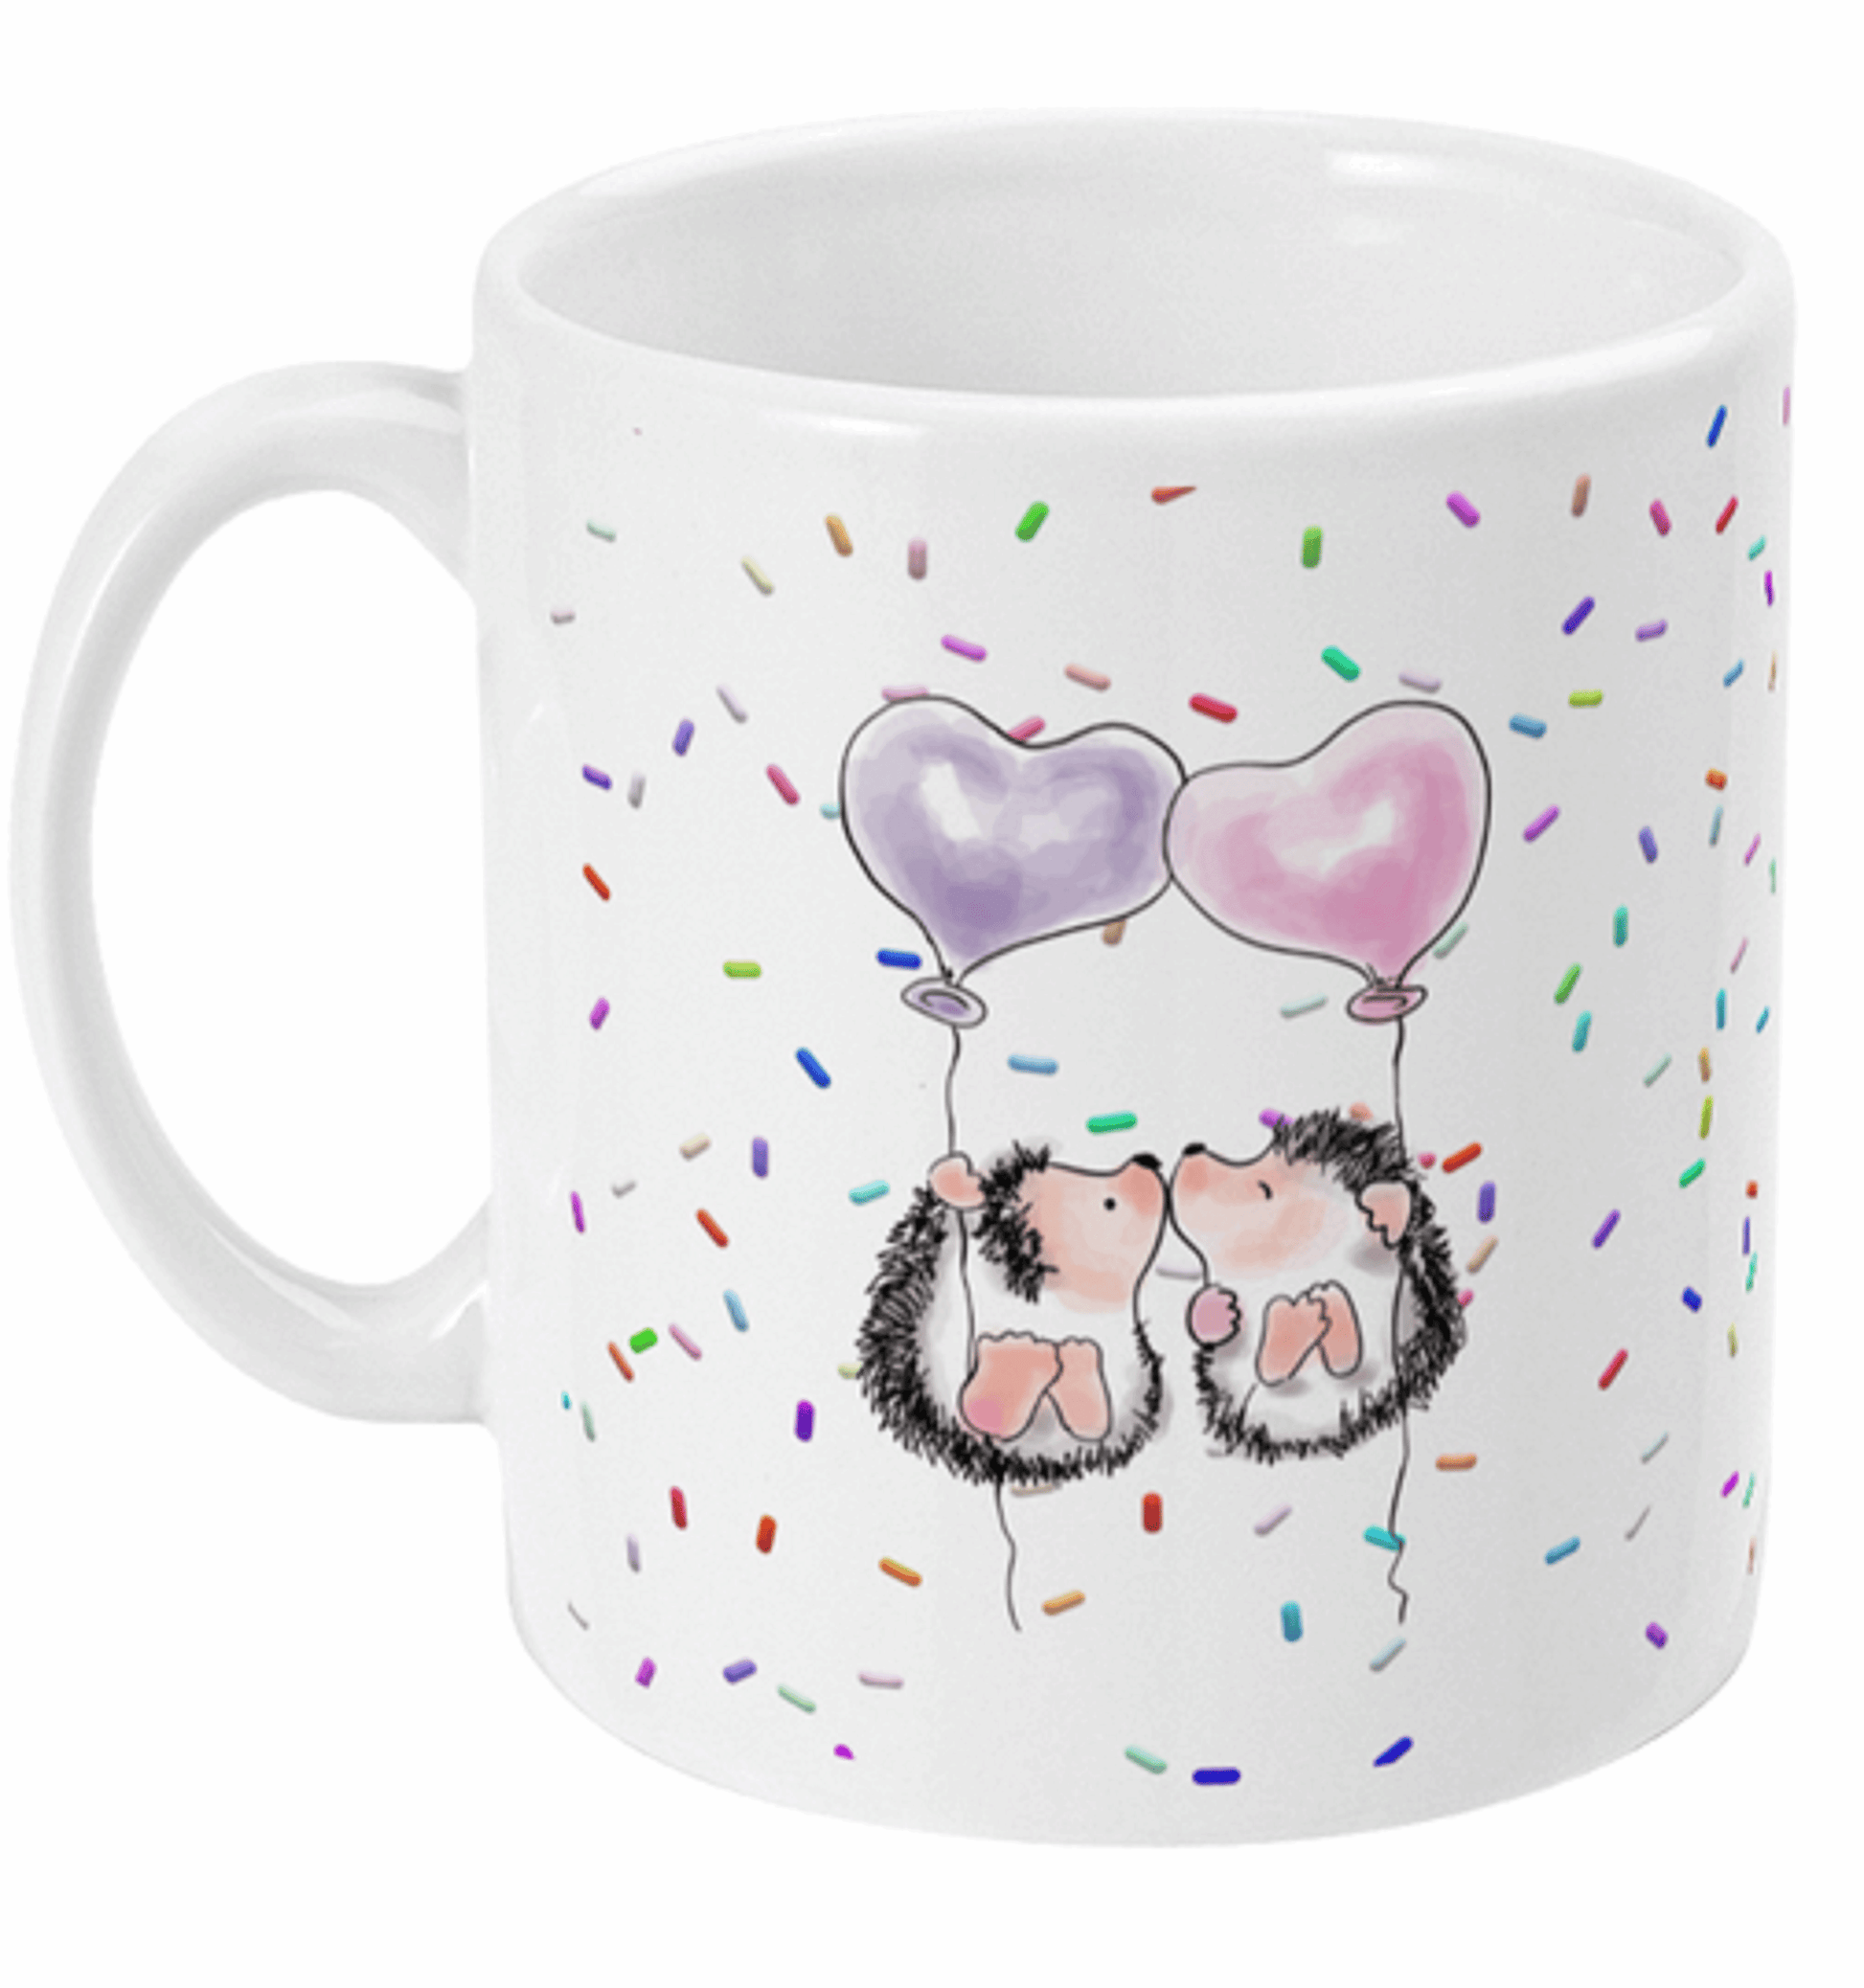  Cute Kissing Hedgehogs Coffee Mug by Free Spirit Accessories sold by Free Spirit Accessories